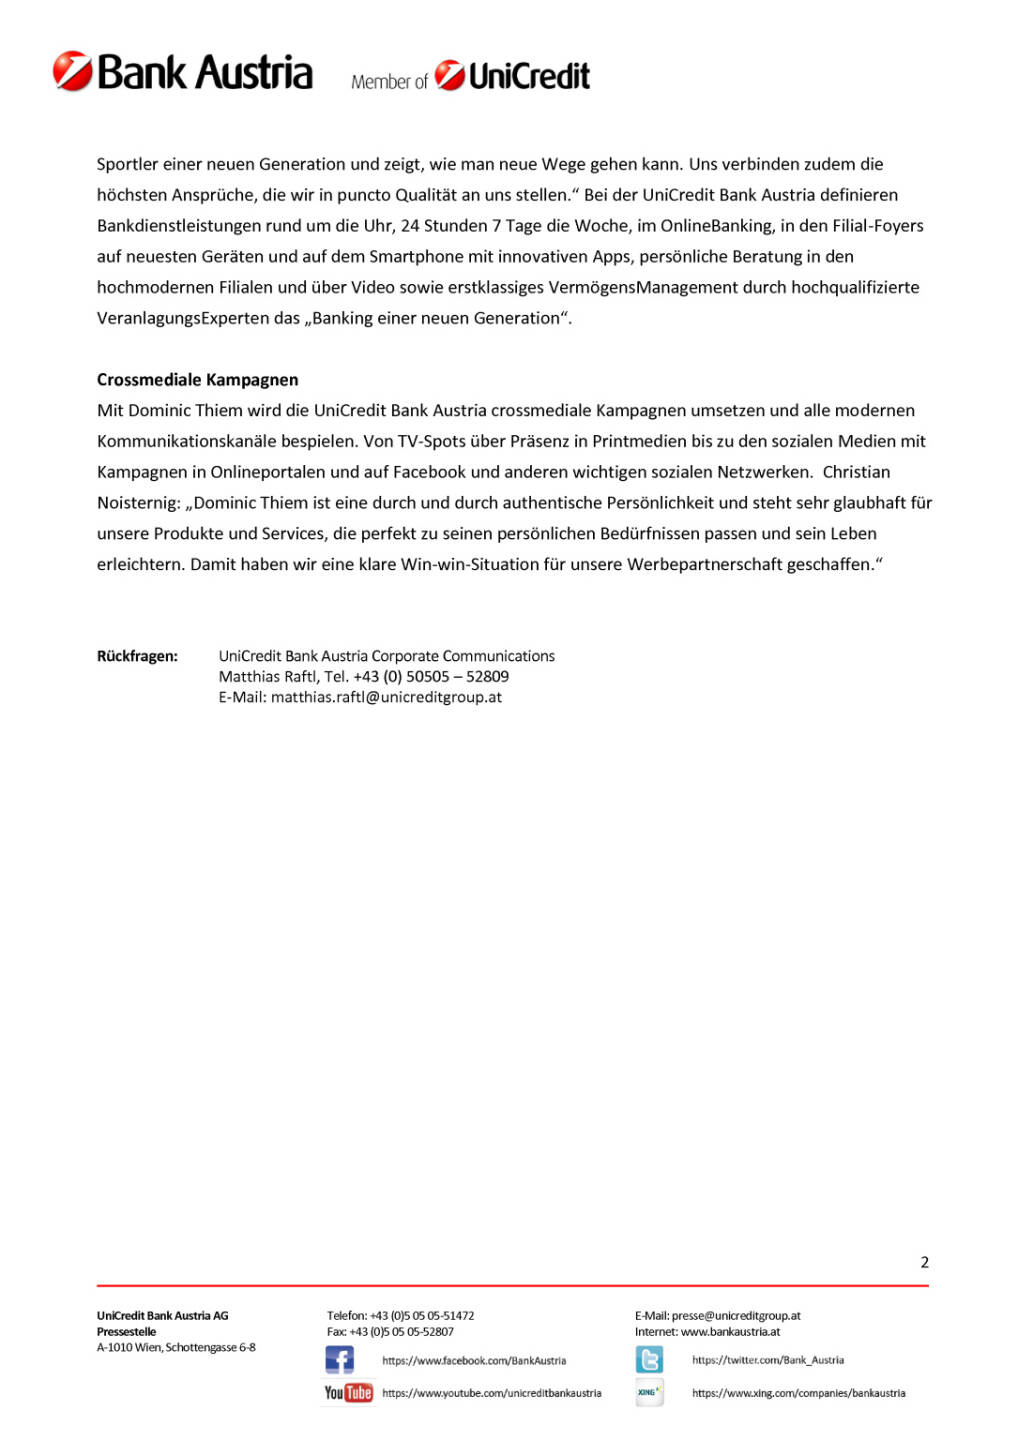 UniCredit Bank Austria verpflichtet Dominic Thiem als neuen Markenbotschafter, Seite 2/2, komplettes Dokument unter http://boerse-social.com/static/uploads/file_2230_unicredit_bank_austria_verpflichtet_dominic_thiem_als_neuen_markenbotschafter.pdf